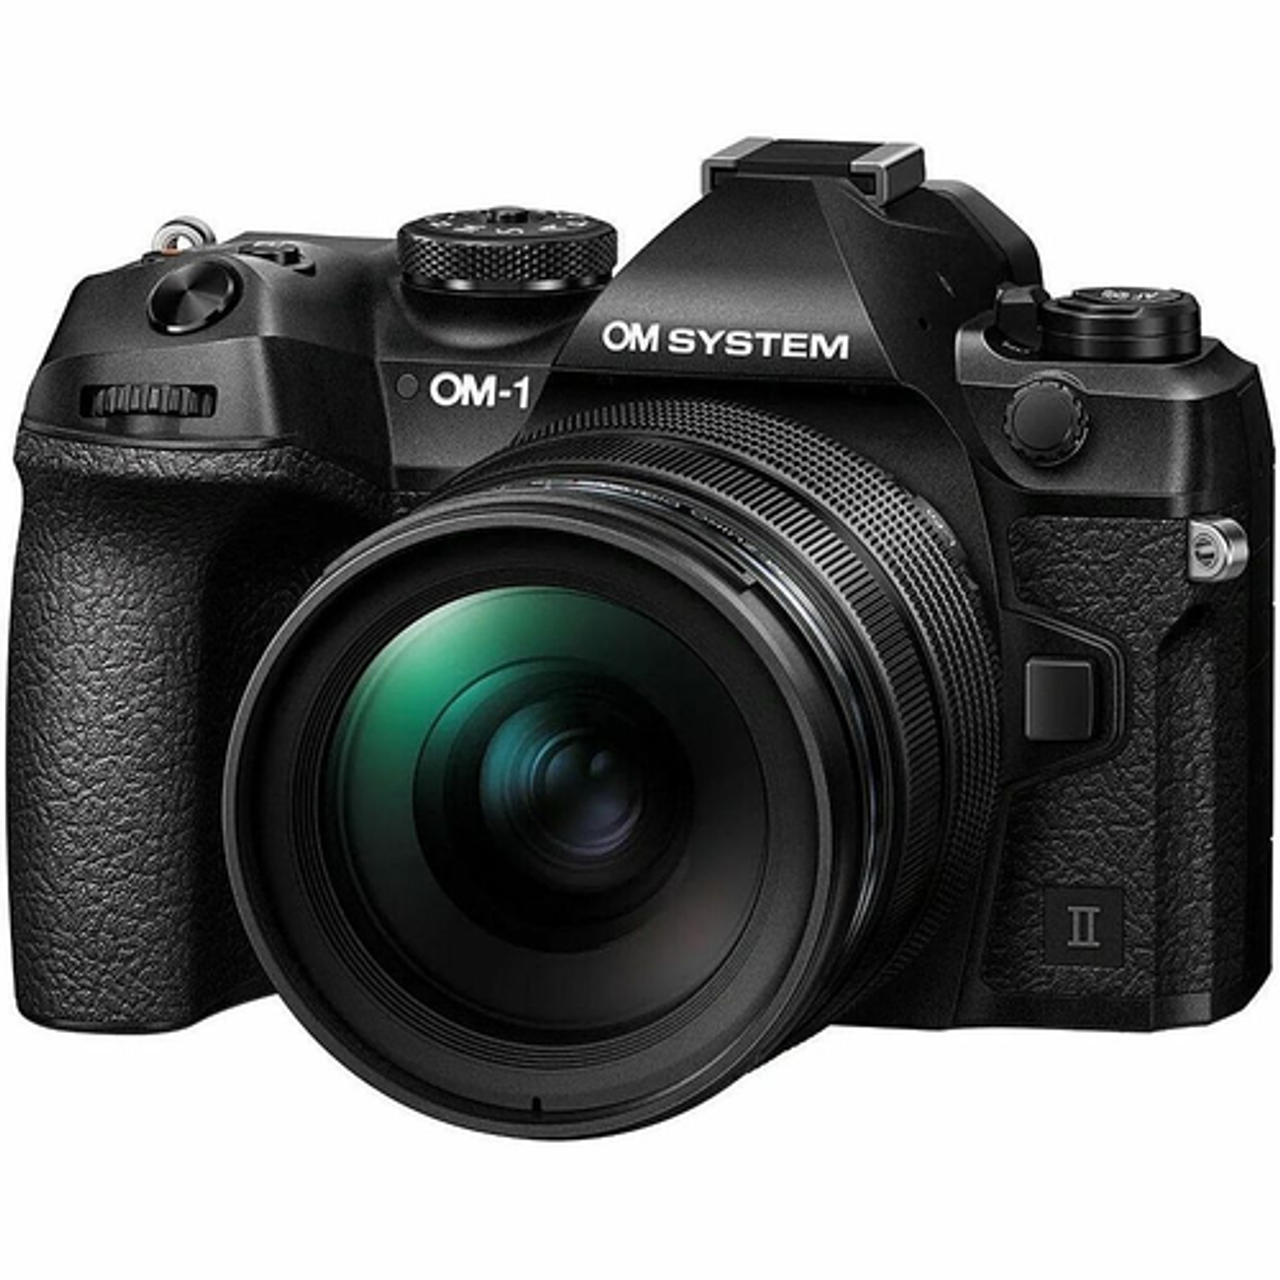 Olympus - OM SYSTEM OM-1 Mark II 4K Video Mirrorless Camera with Lens - Black